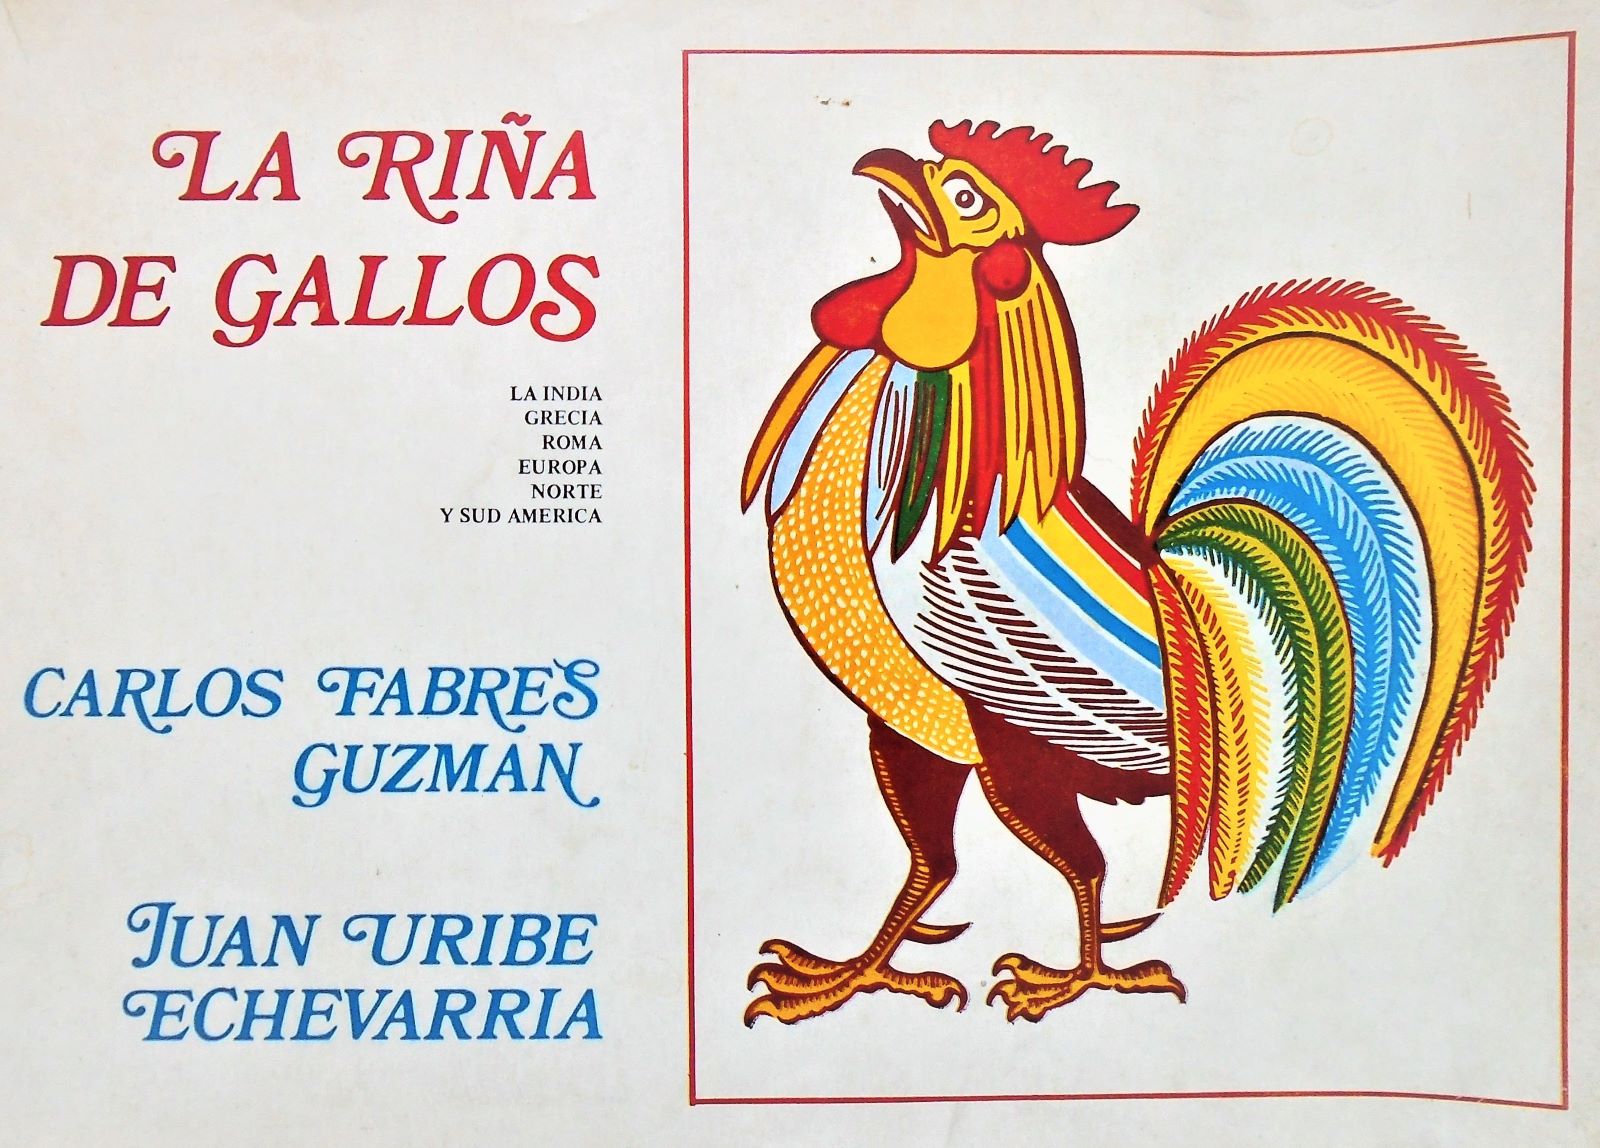 Carlos Fabres Guzmán & Juan Uribe Echevarria - La riña de gallos